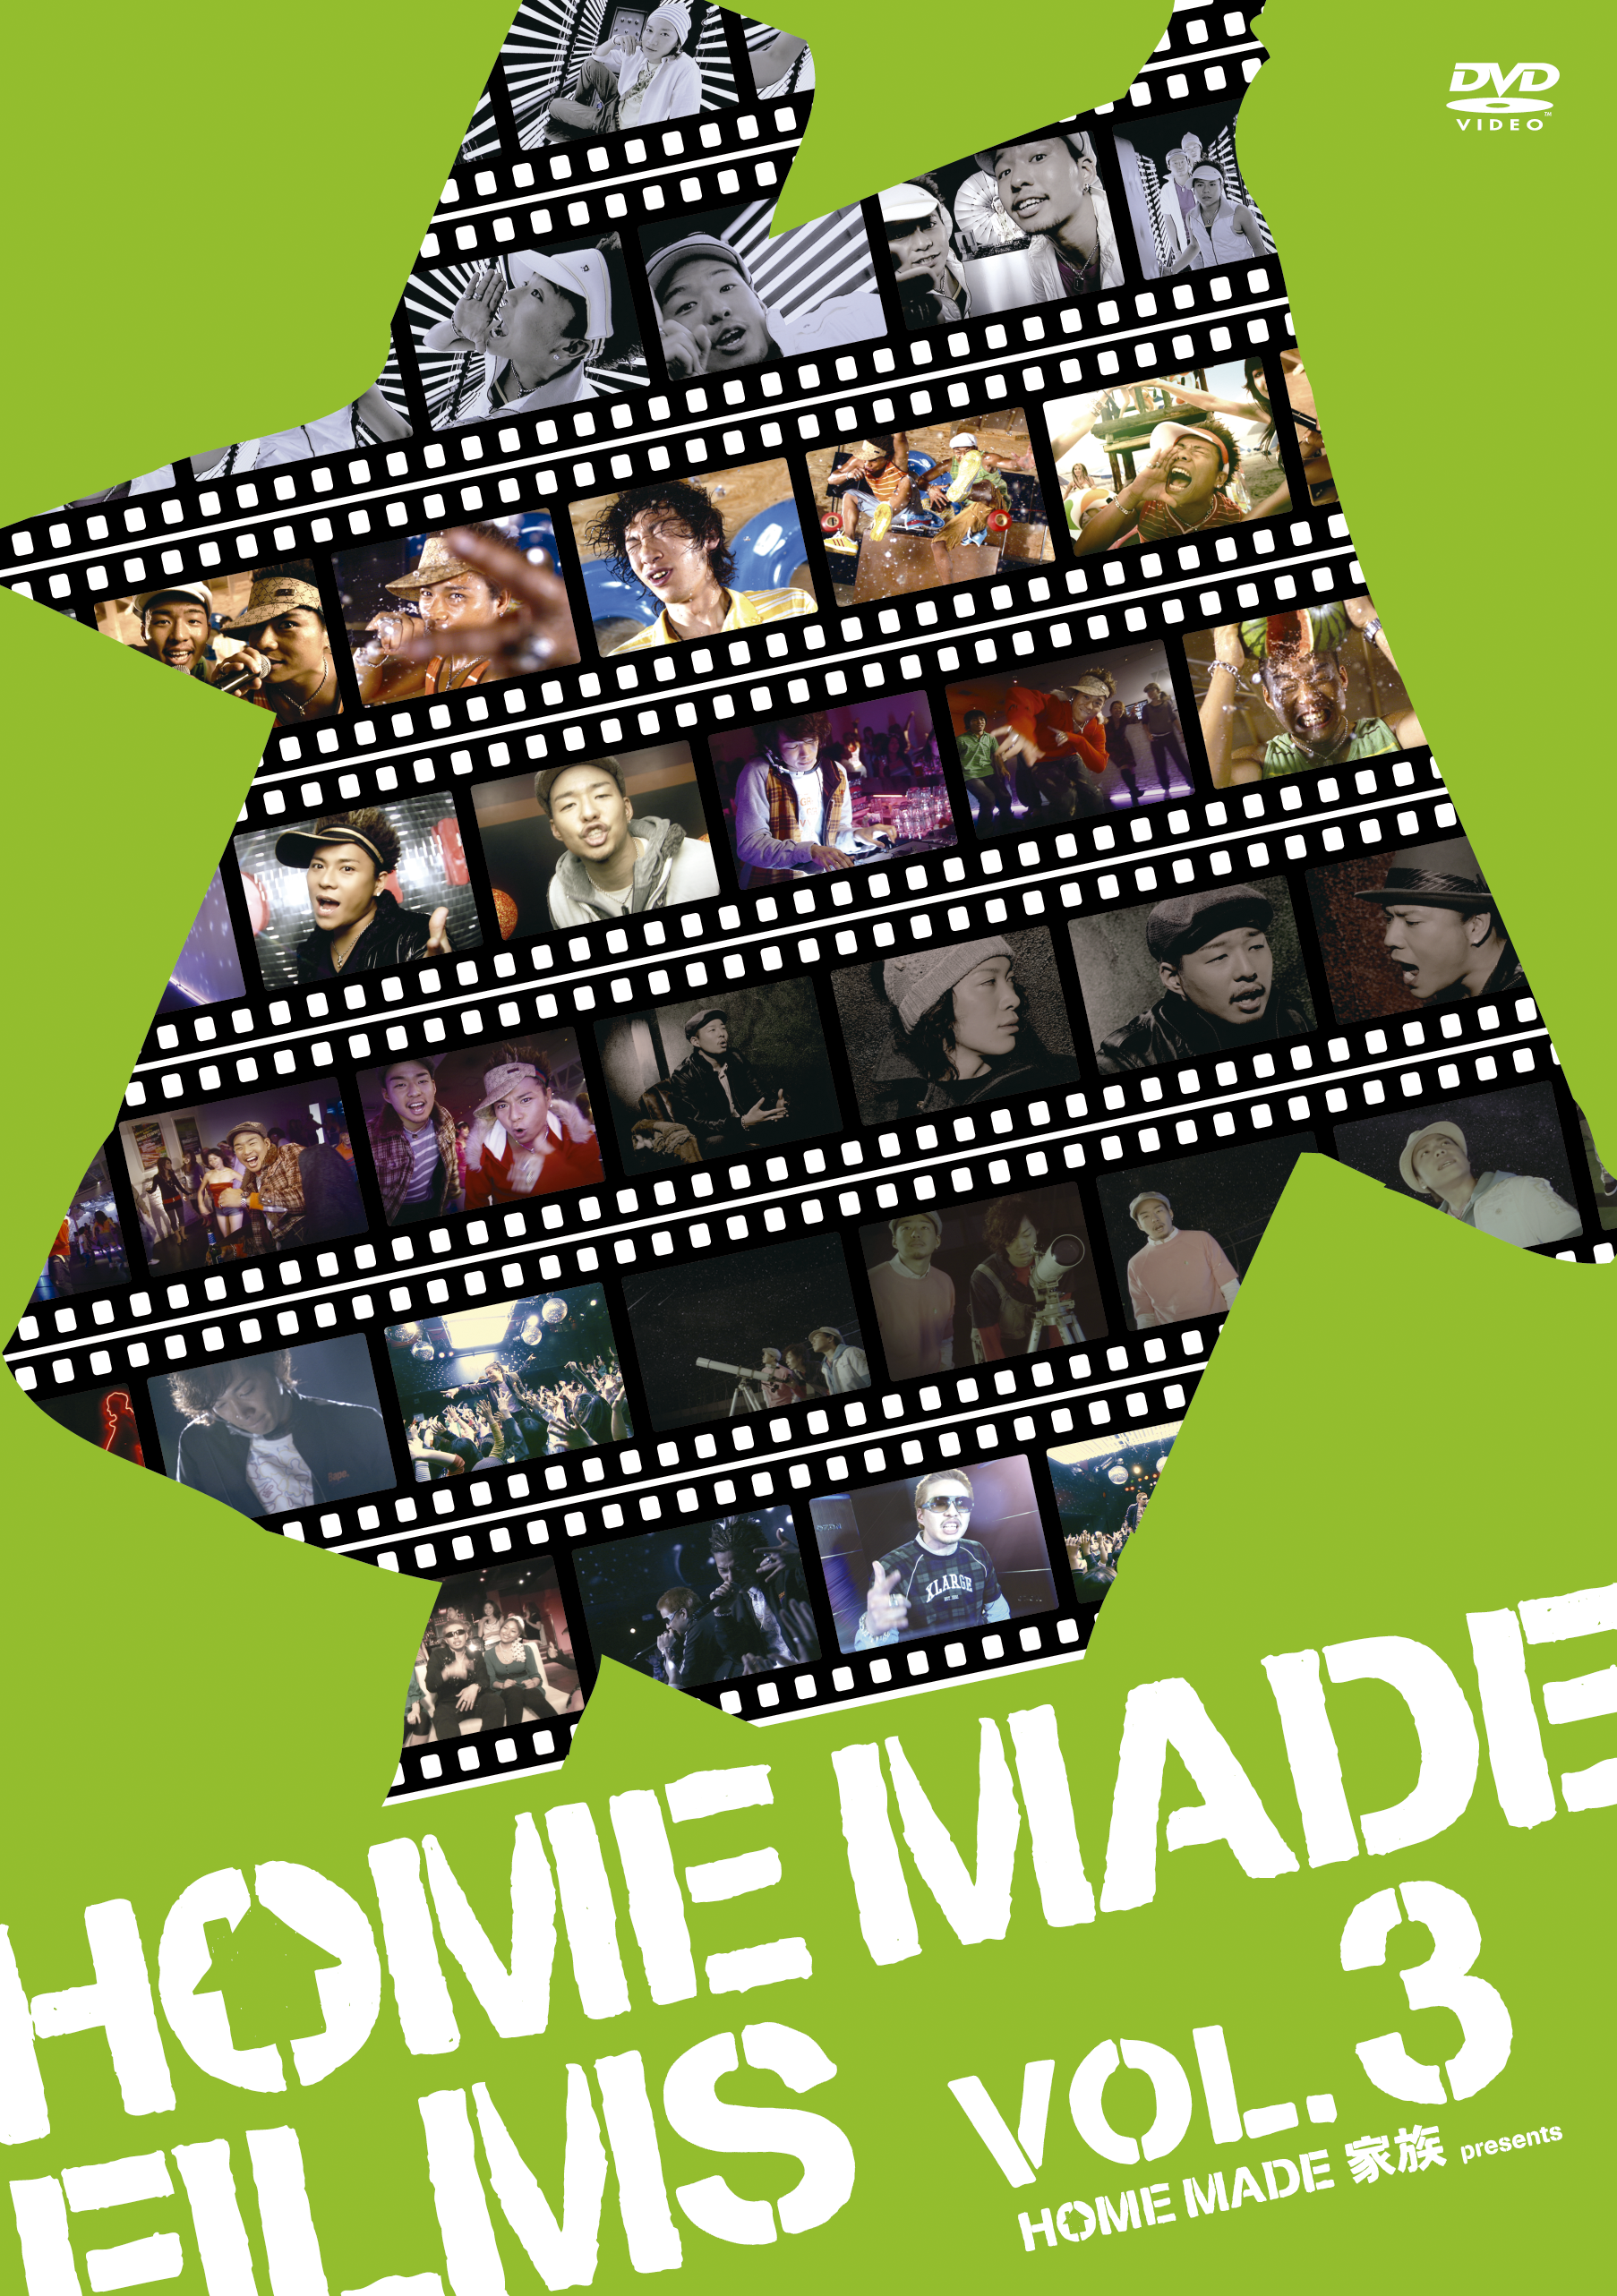 sexy home made films